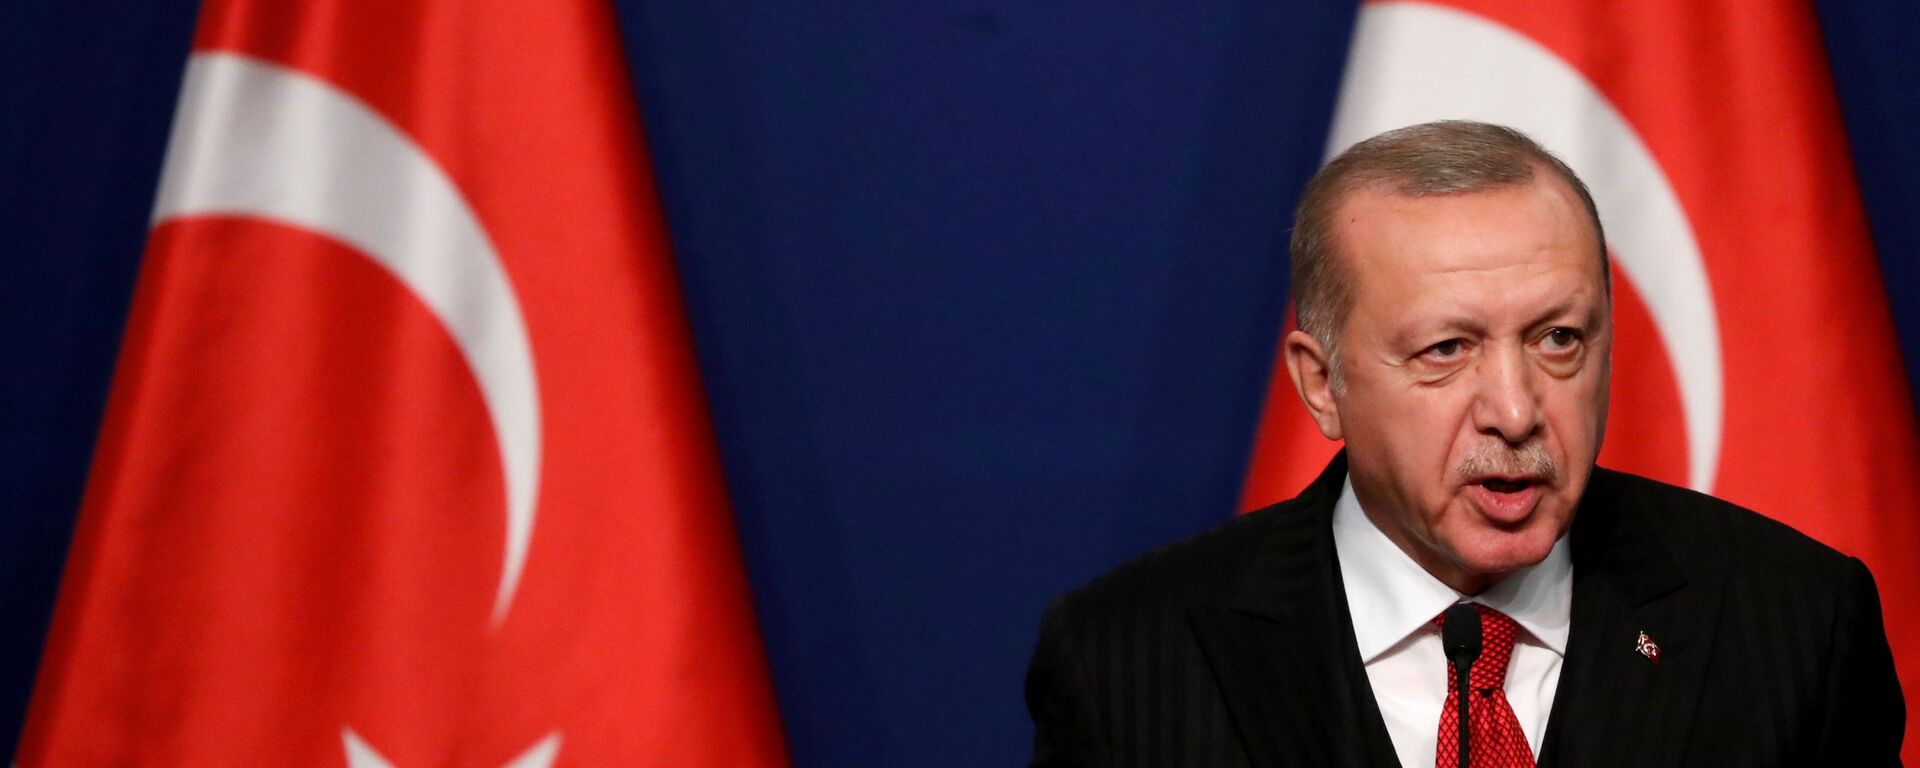 Tổng thống Thổ Nhĩ Kỳ Recep Tayyip Erdogan tham dự cuộc họp báo với Thủ tướng Hungary Viktor Orban (không ảnh) tại Budapest, Hungary ngày 7 tháng 11 năm 2019. REUTERS / Bernadett Szabo / File Photo - Sputnik Việt Nam, 1920, 15.11.2021